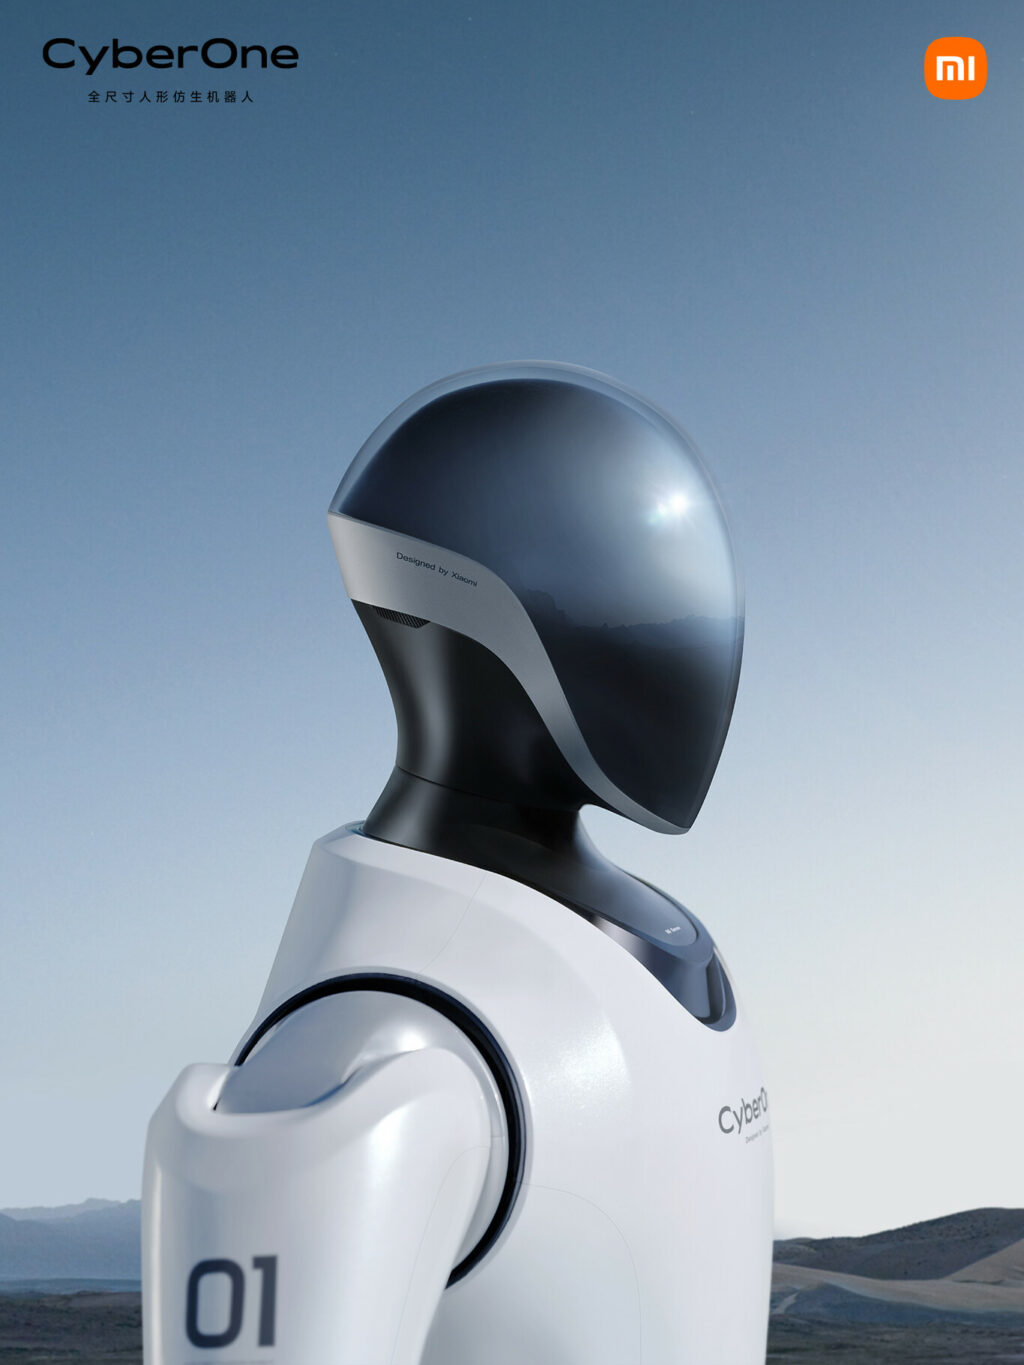 xiaomi-planta-cara-a-tesla-asi-es-cyberone-su-primer-robot-humanoide